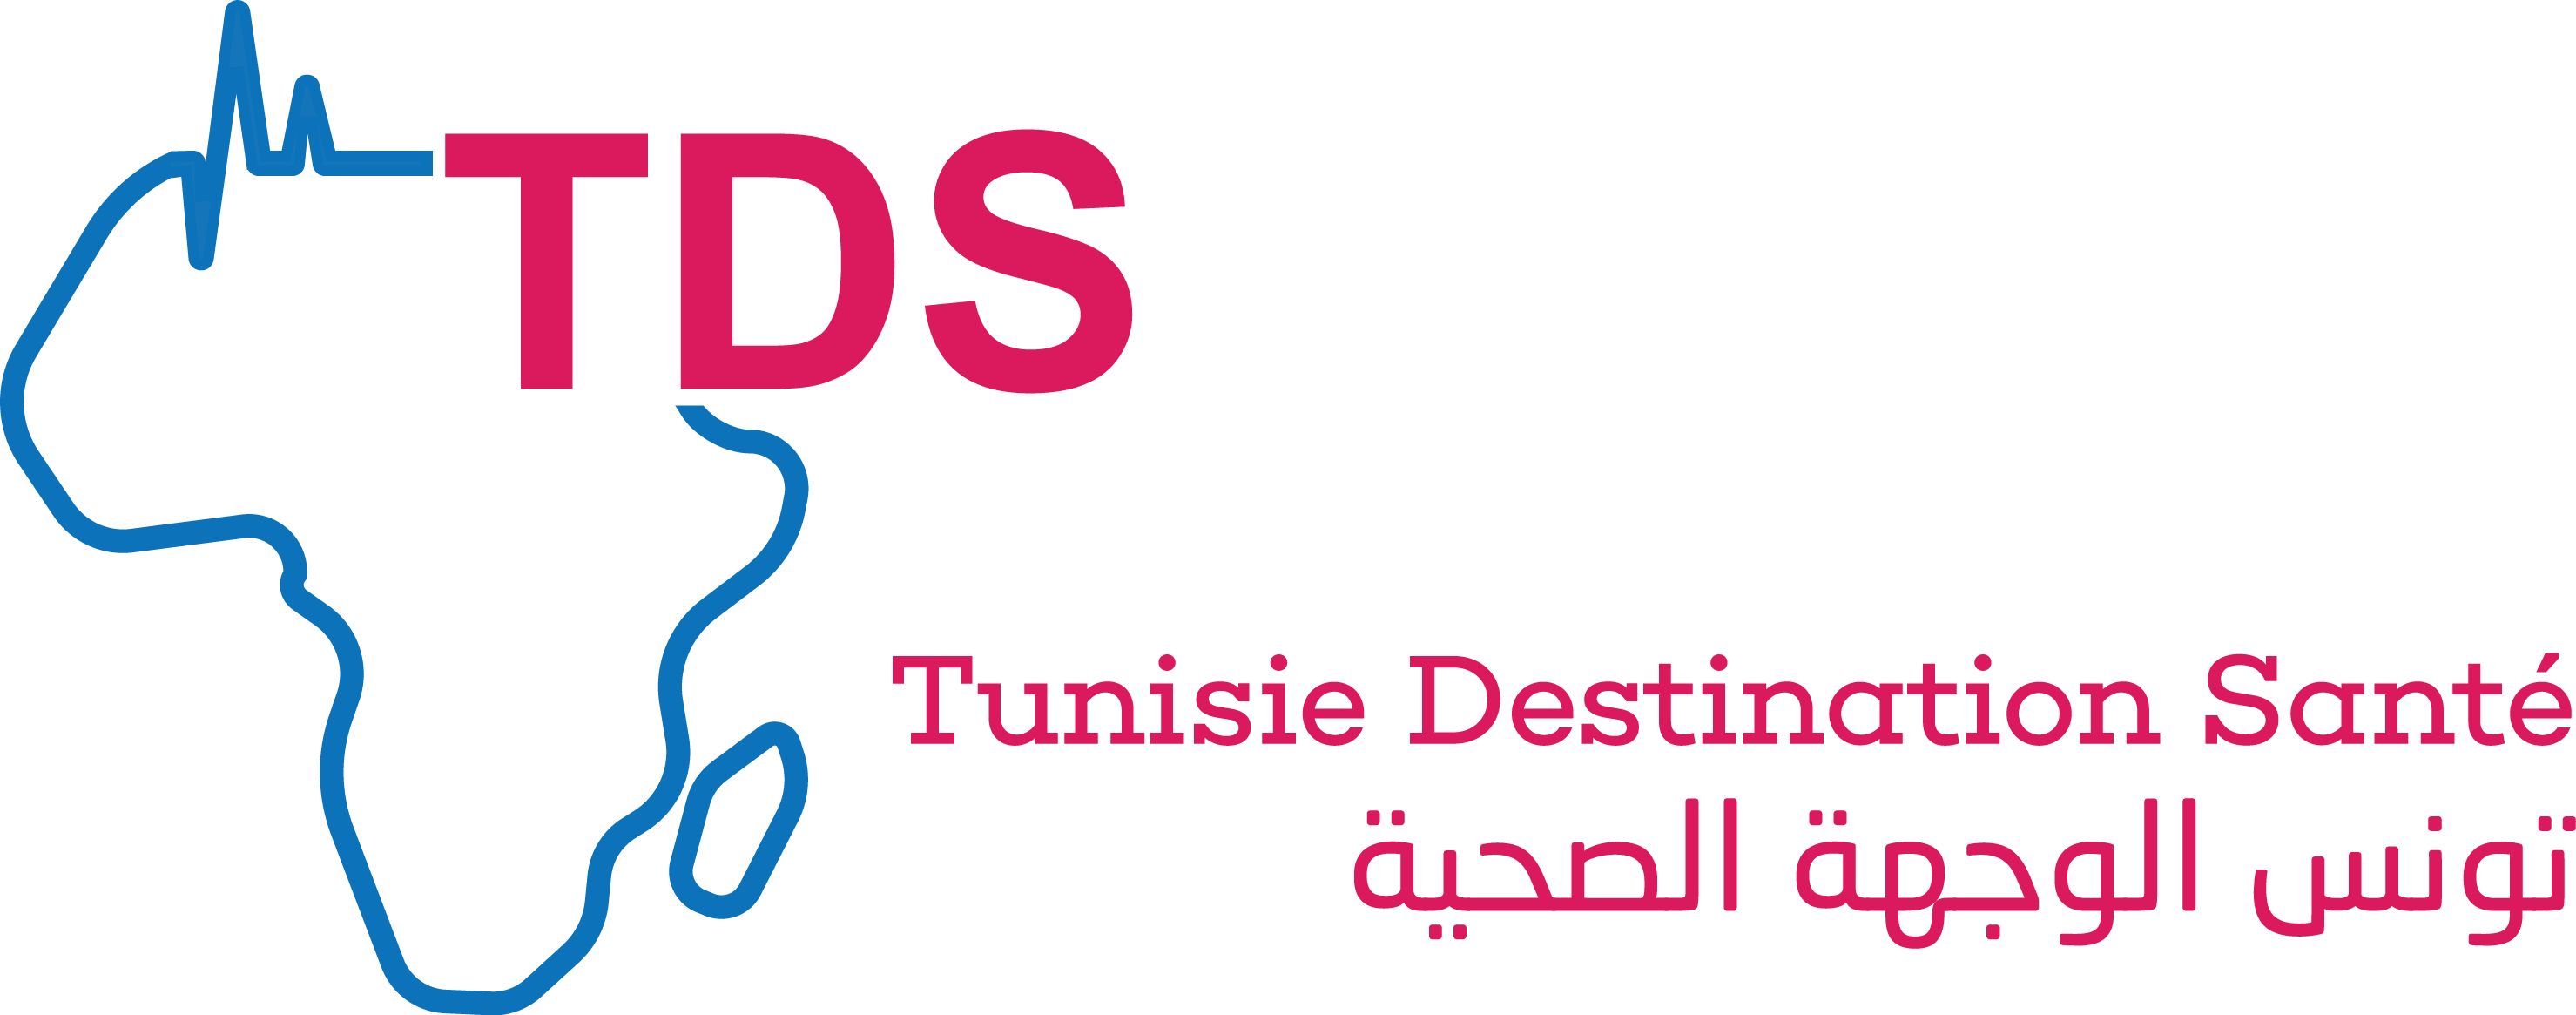 تونس الوجهة الصحية